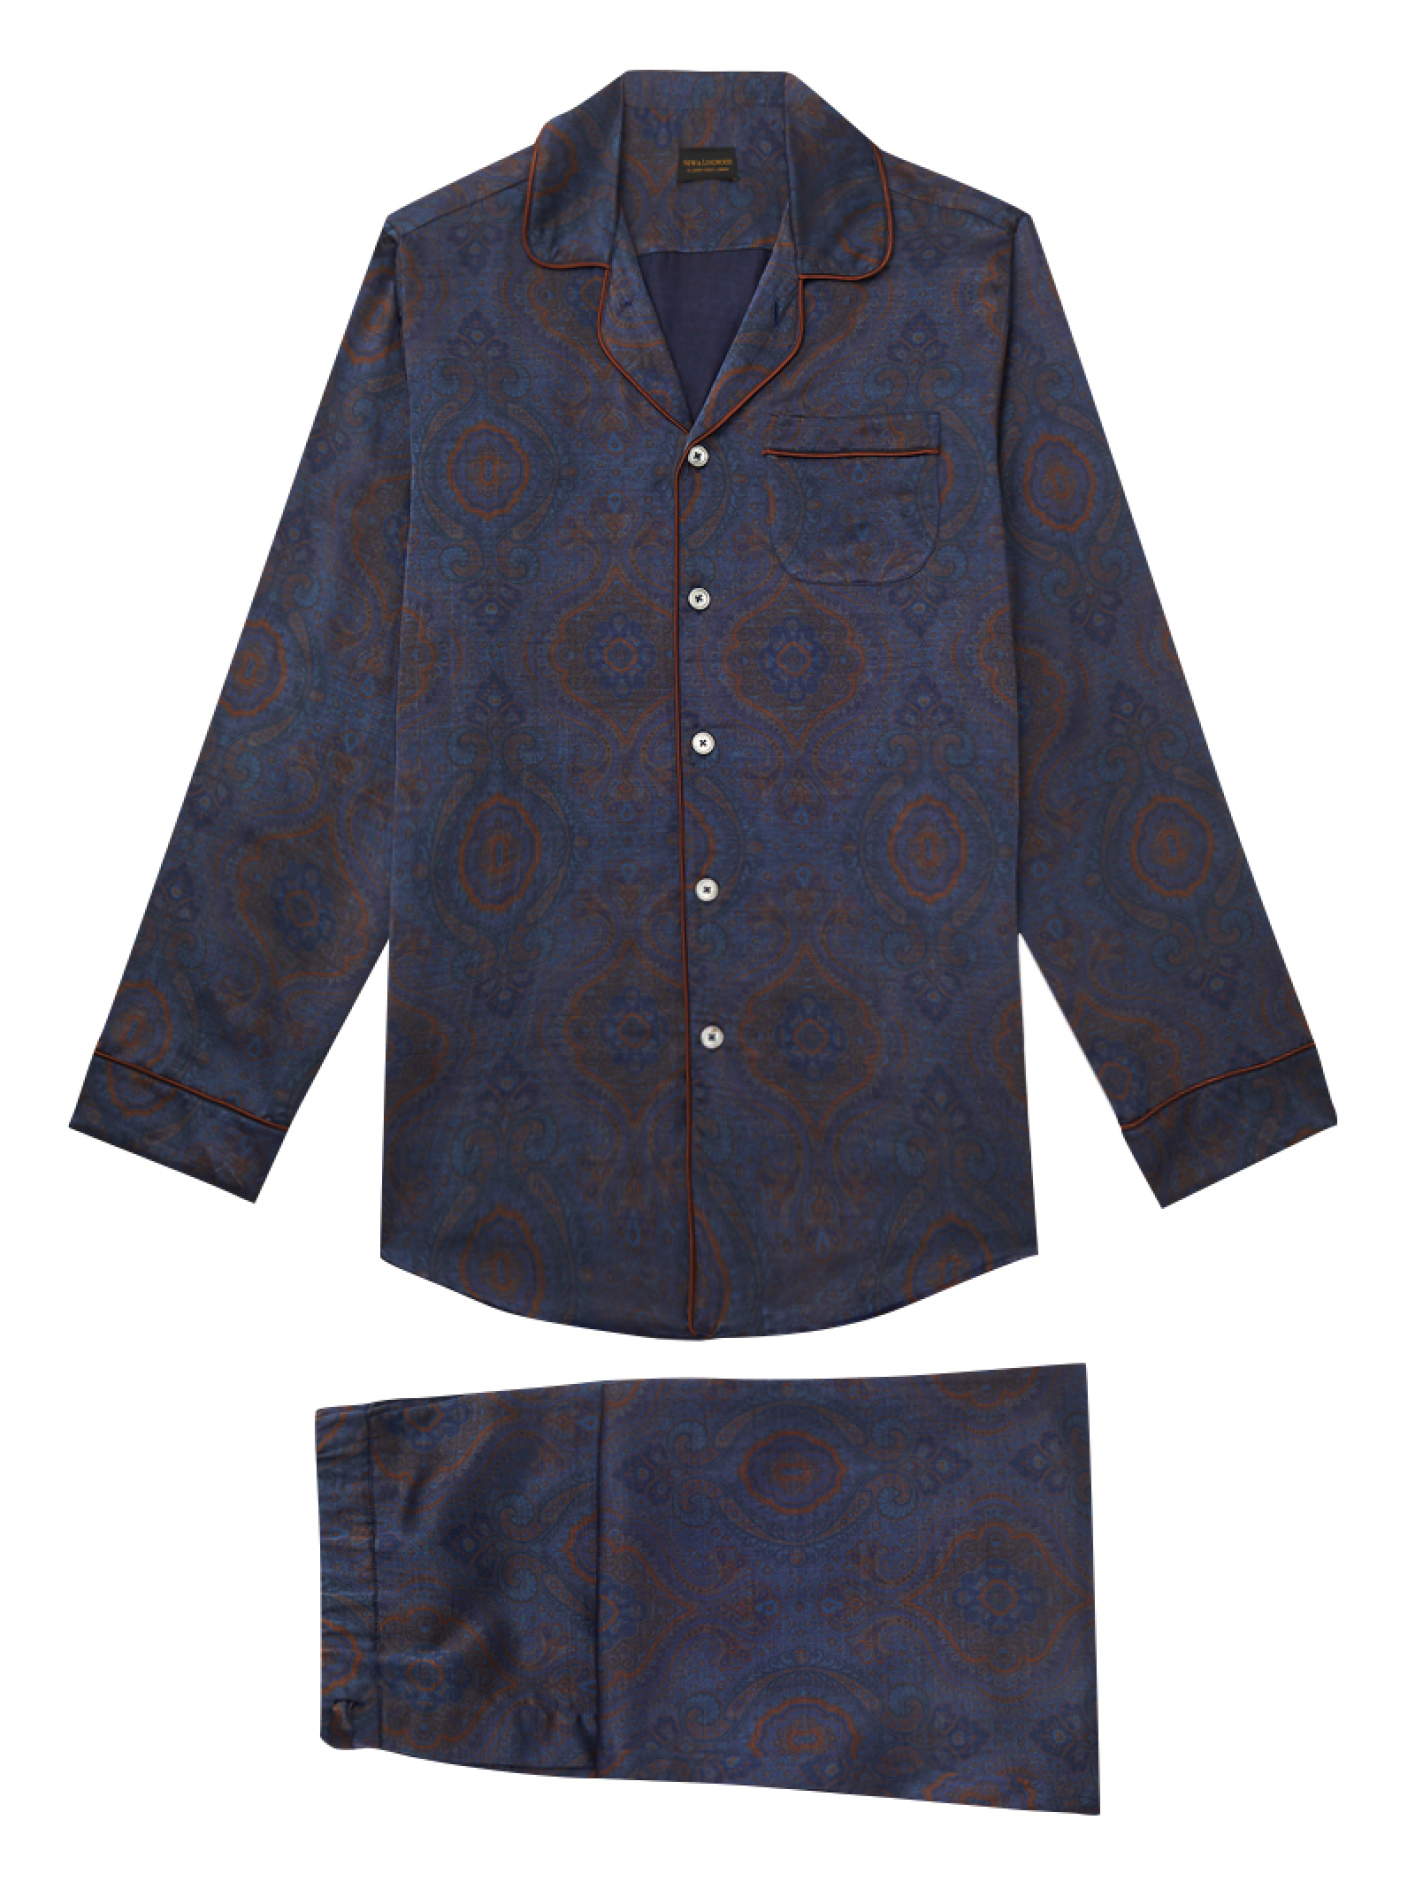 Paisley printed silk pyjama set, £495